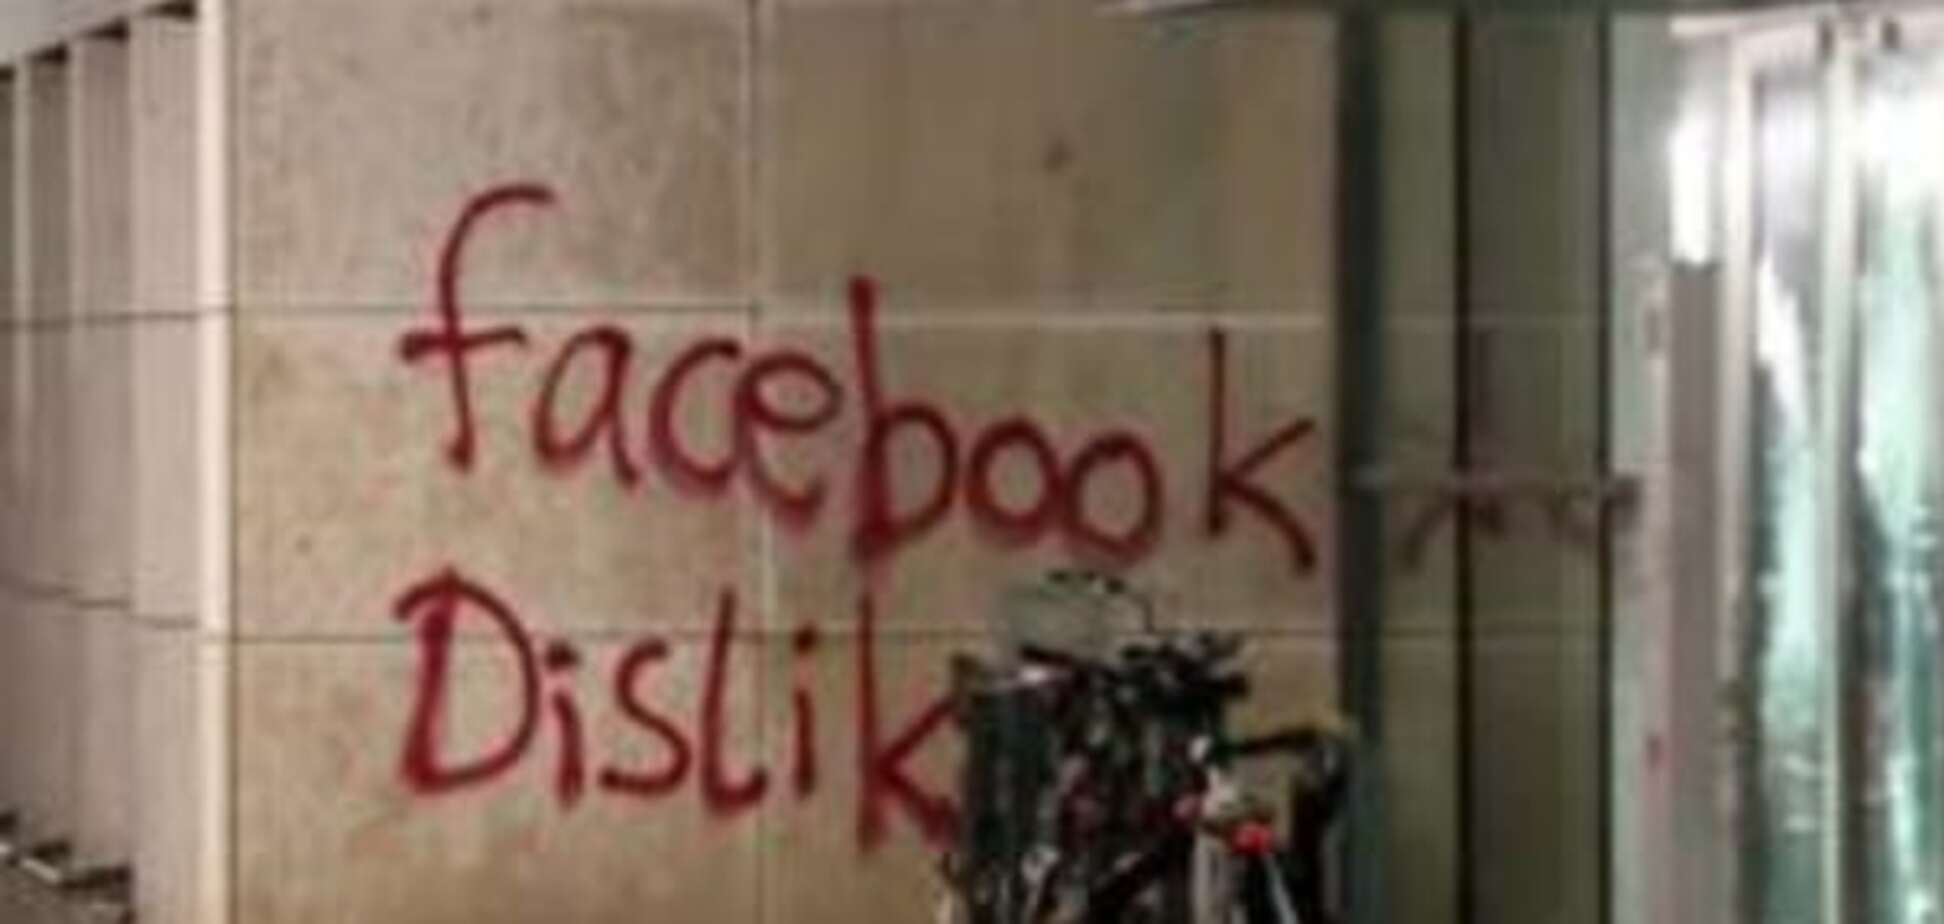 Не лайкнули: штаб-квартиру Facebook забросали 'кровавой' краской. Опубликованы фото